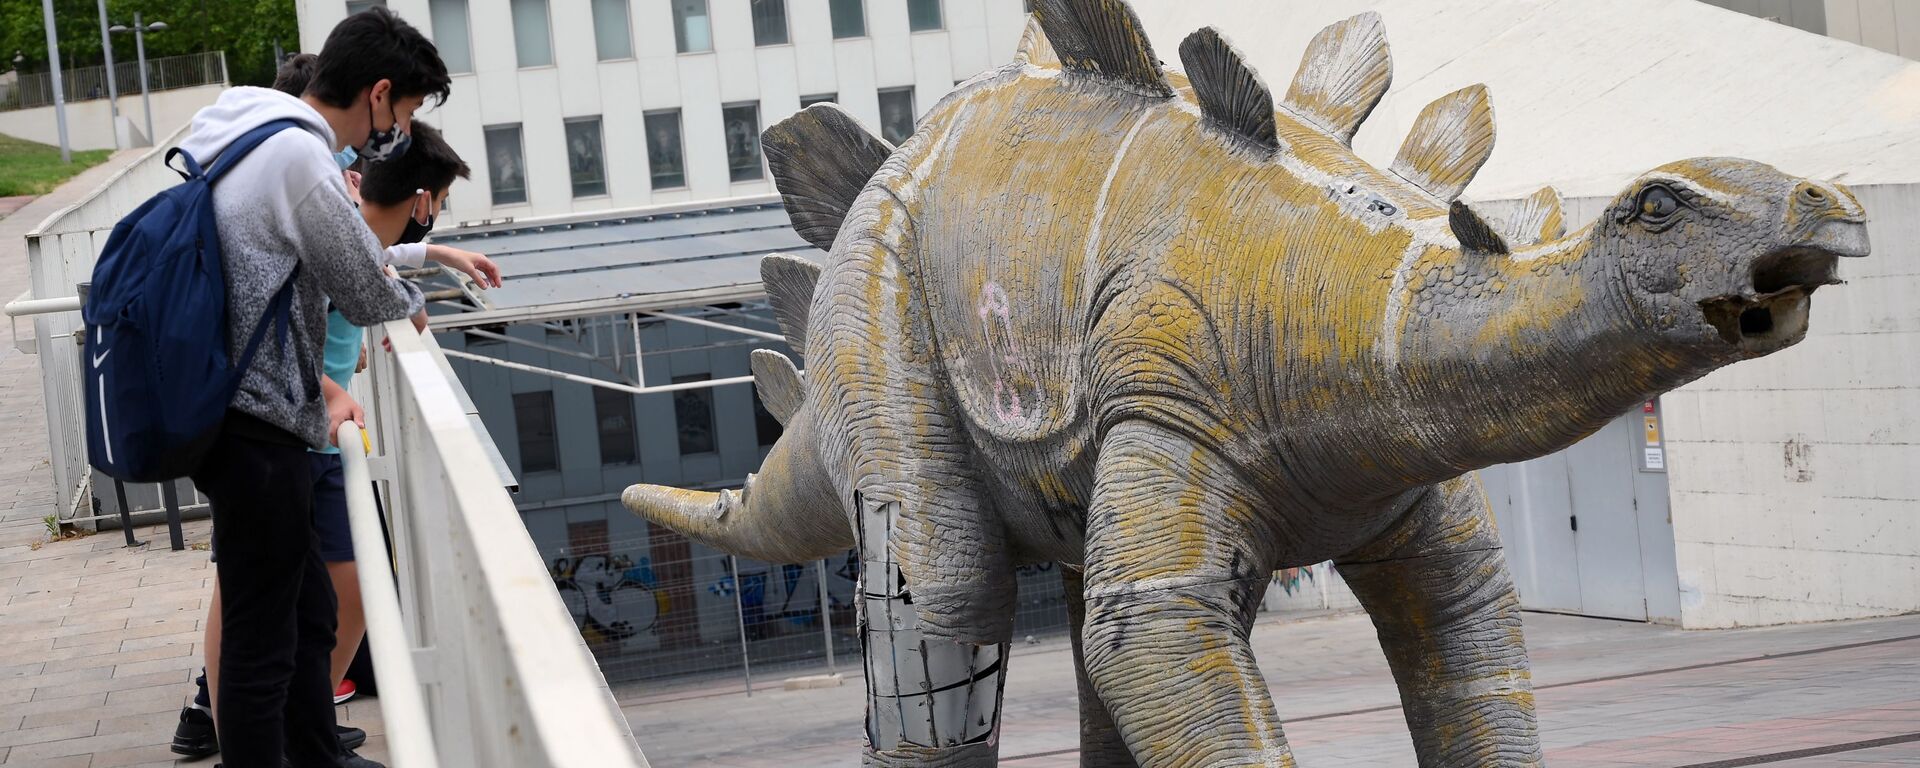 Ичинен кишинин сөөгүн табылган Испаниядагы динозаврдын статуясы - Sputnik Кыргызстан, 1920, 26.05.2021